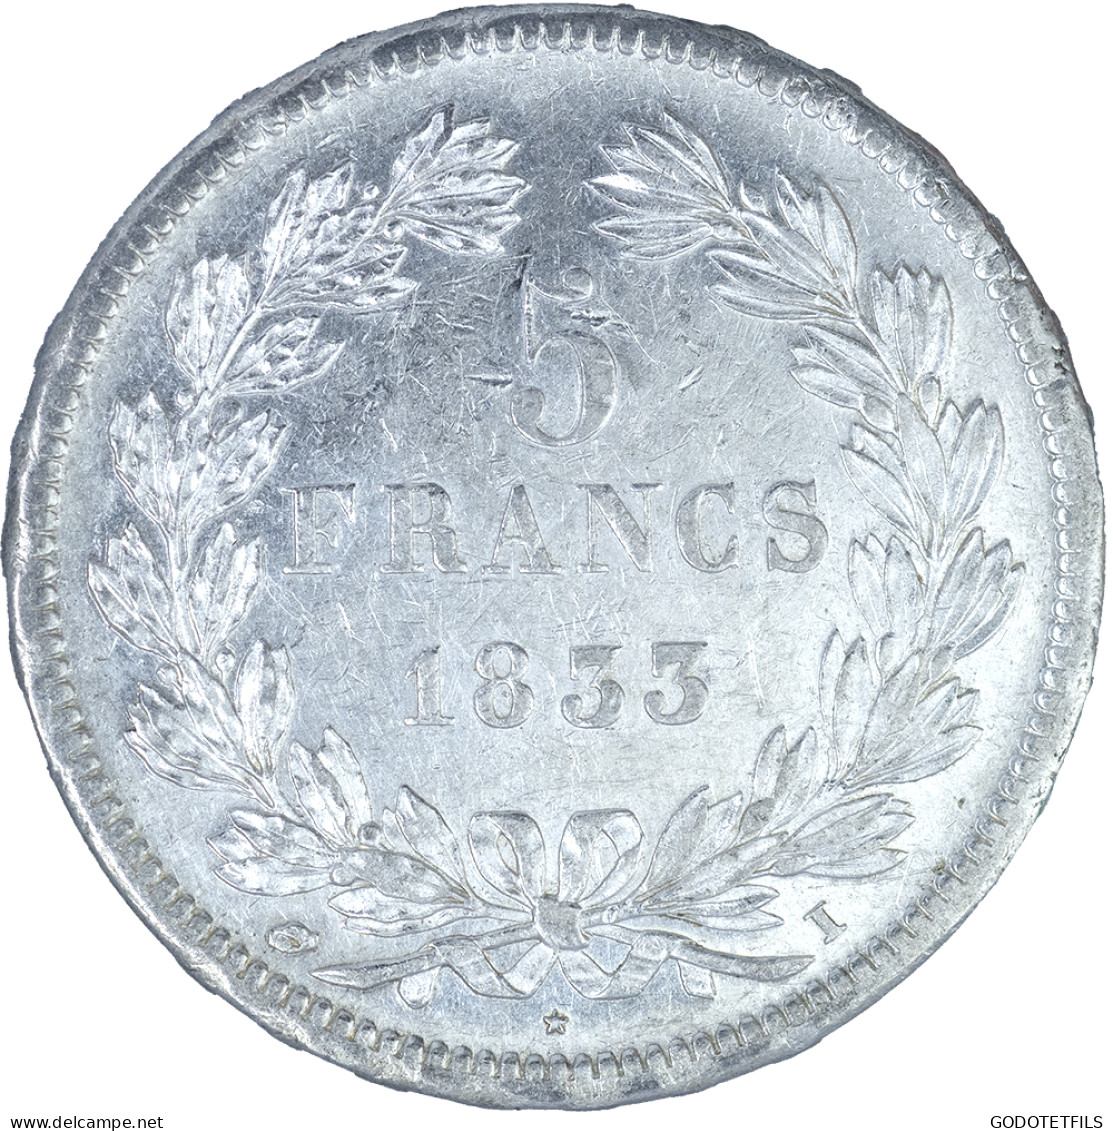 Louis-Philippe-5 Francs 1833 Limoges - 5 Francs